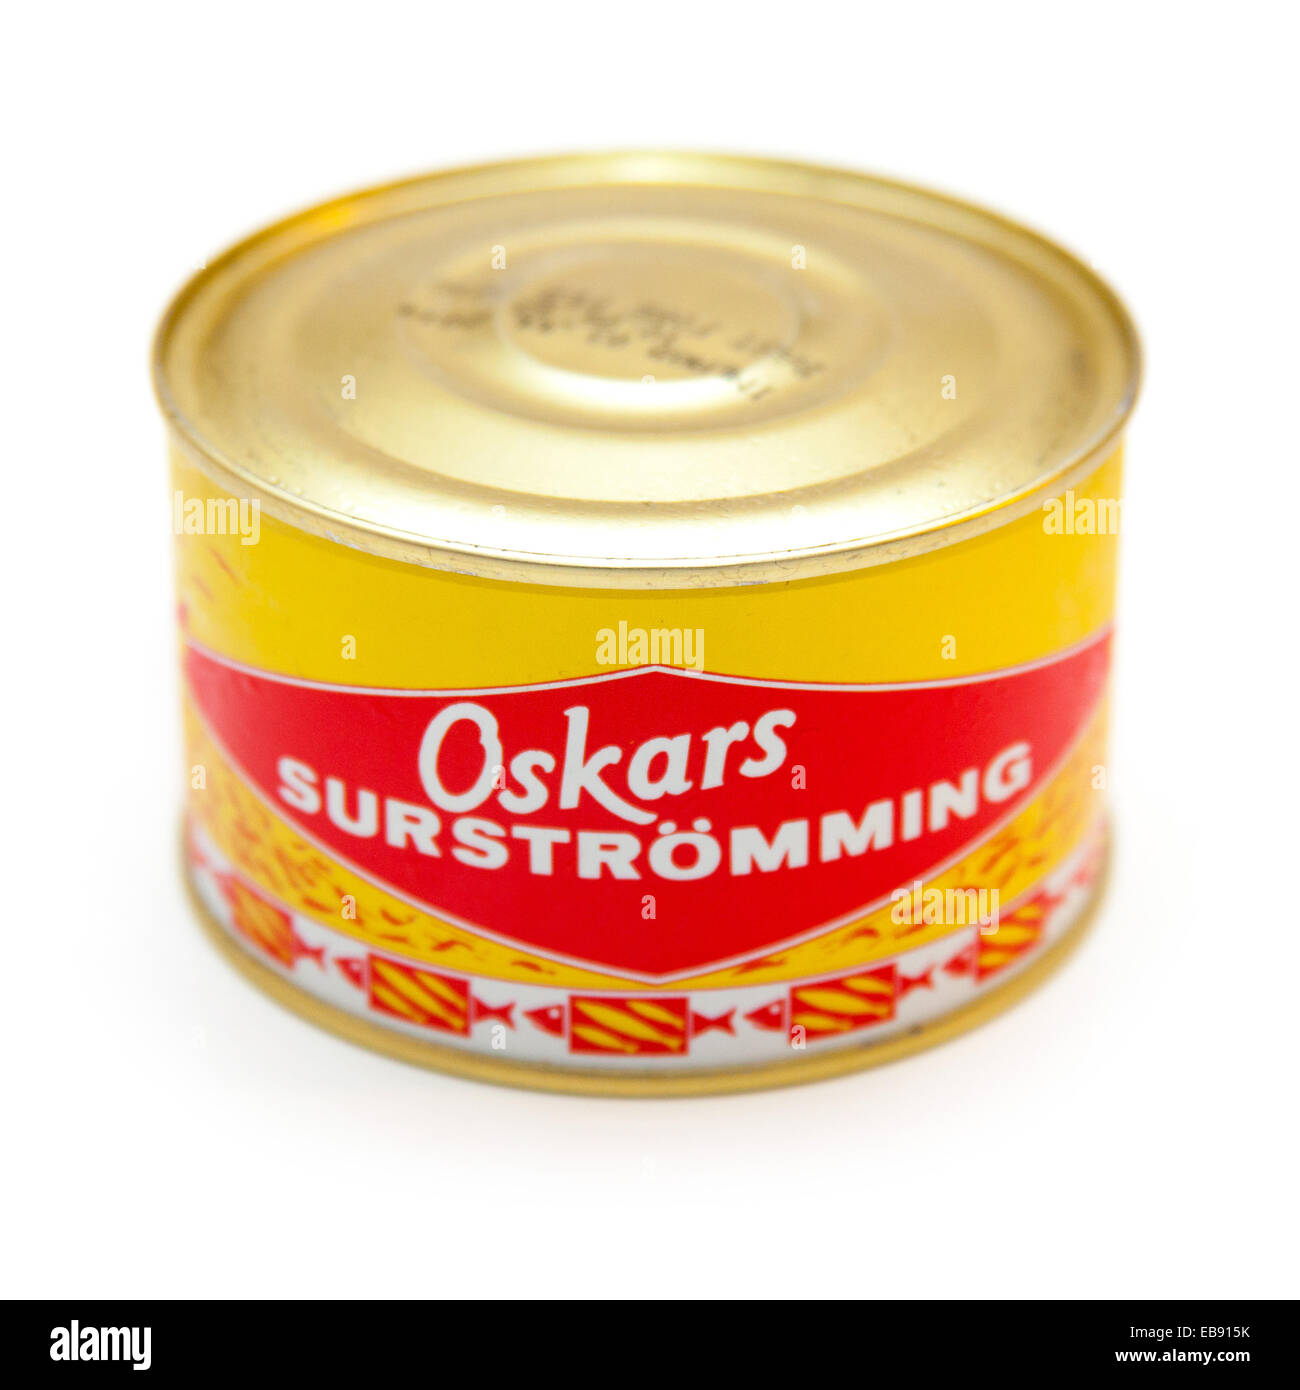 Surströmming (La peor comida del mundo): 4 tipos duros vs una lata…